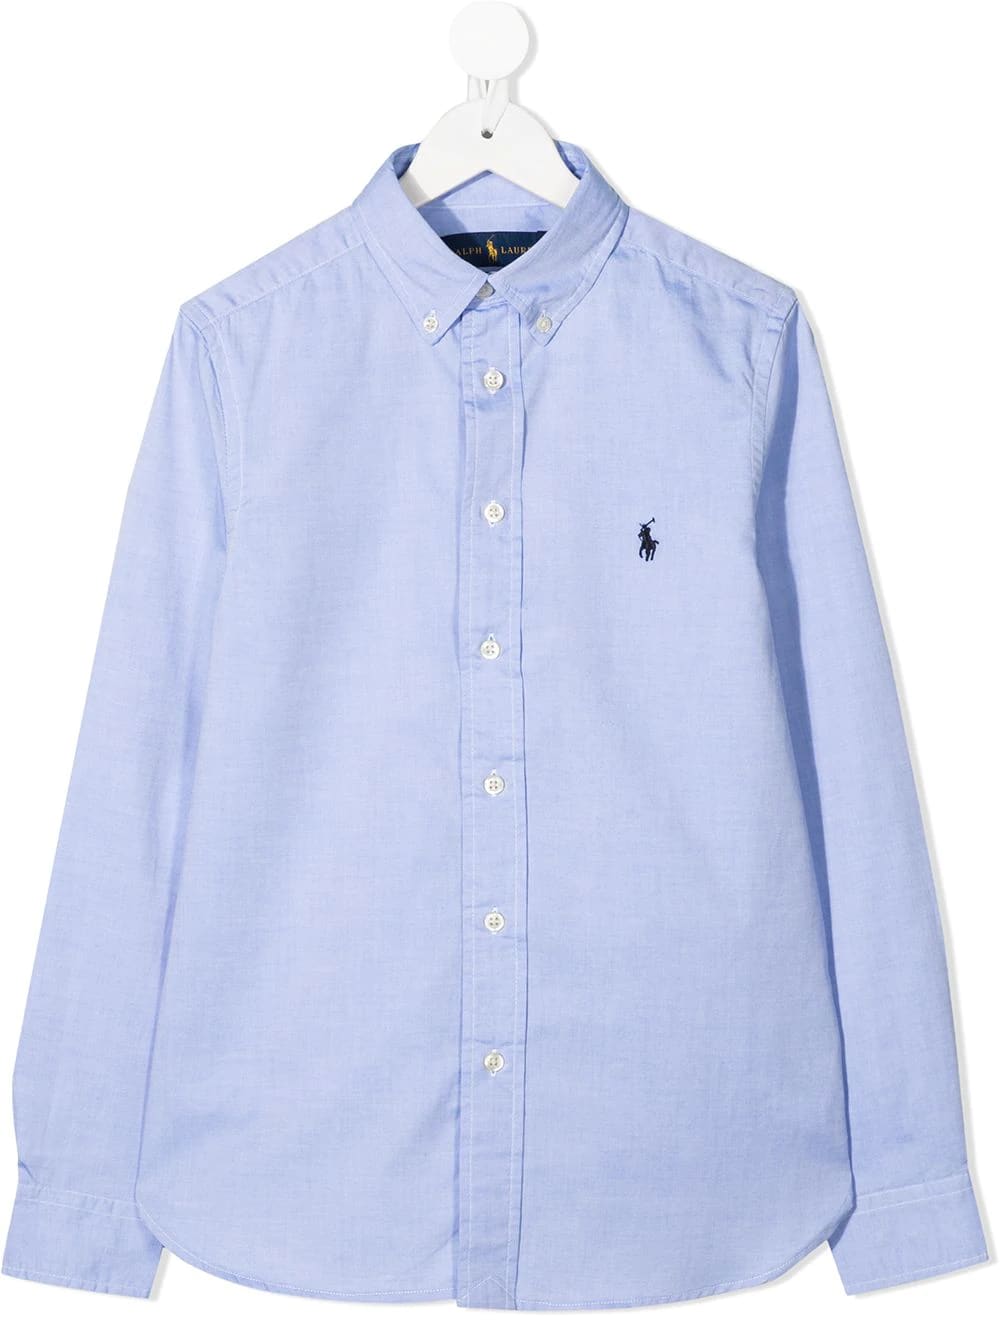 Ralph Lauren Teen Oxford Shirt In Light Blue Slim-fit Cotton